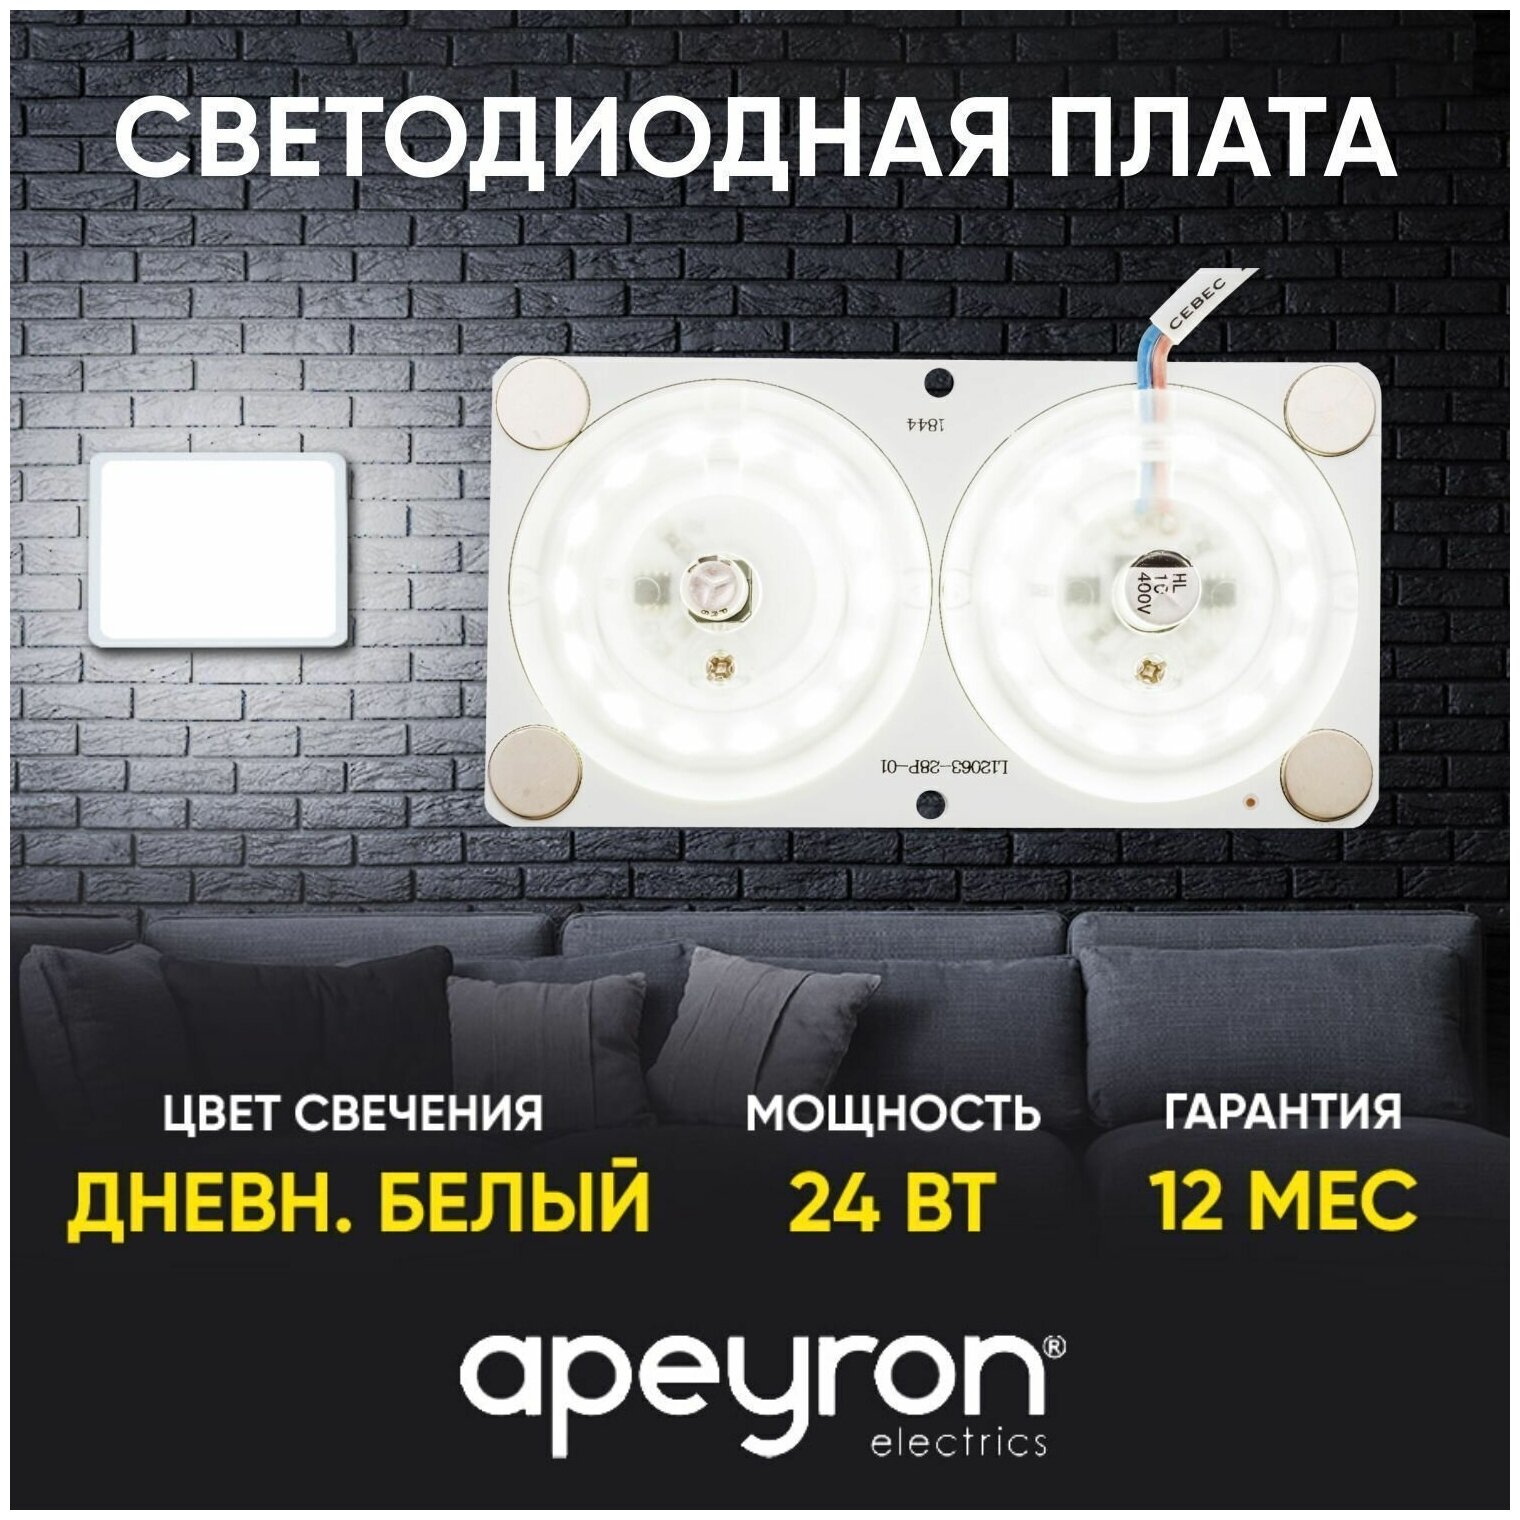 Плата светодиодная для интерьерного света Apeyron 02-16 мощностью 24 Ватт. Влагозащита IP20, цветовая температура 4000К, световой поток 1920Лм, рабочее напряжение 220В, размер 120х63 мм.